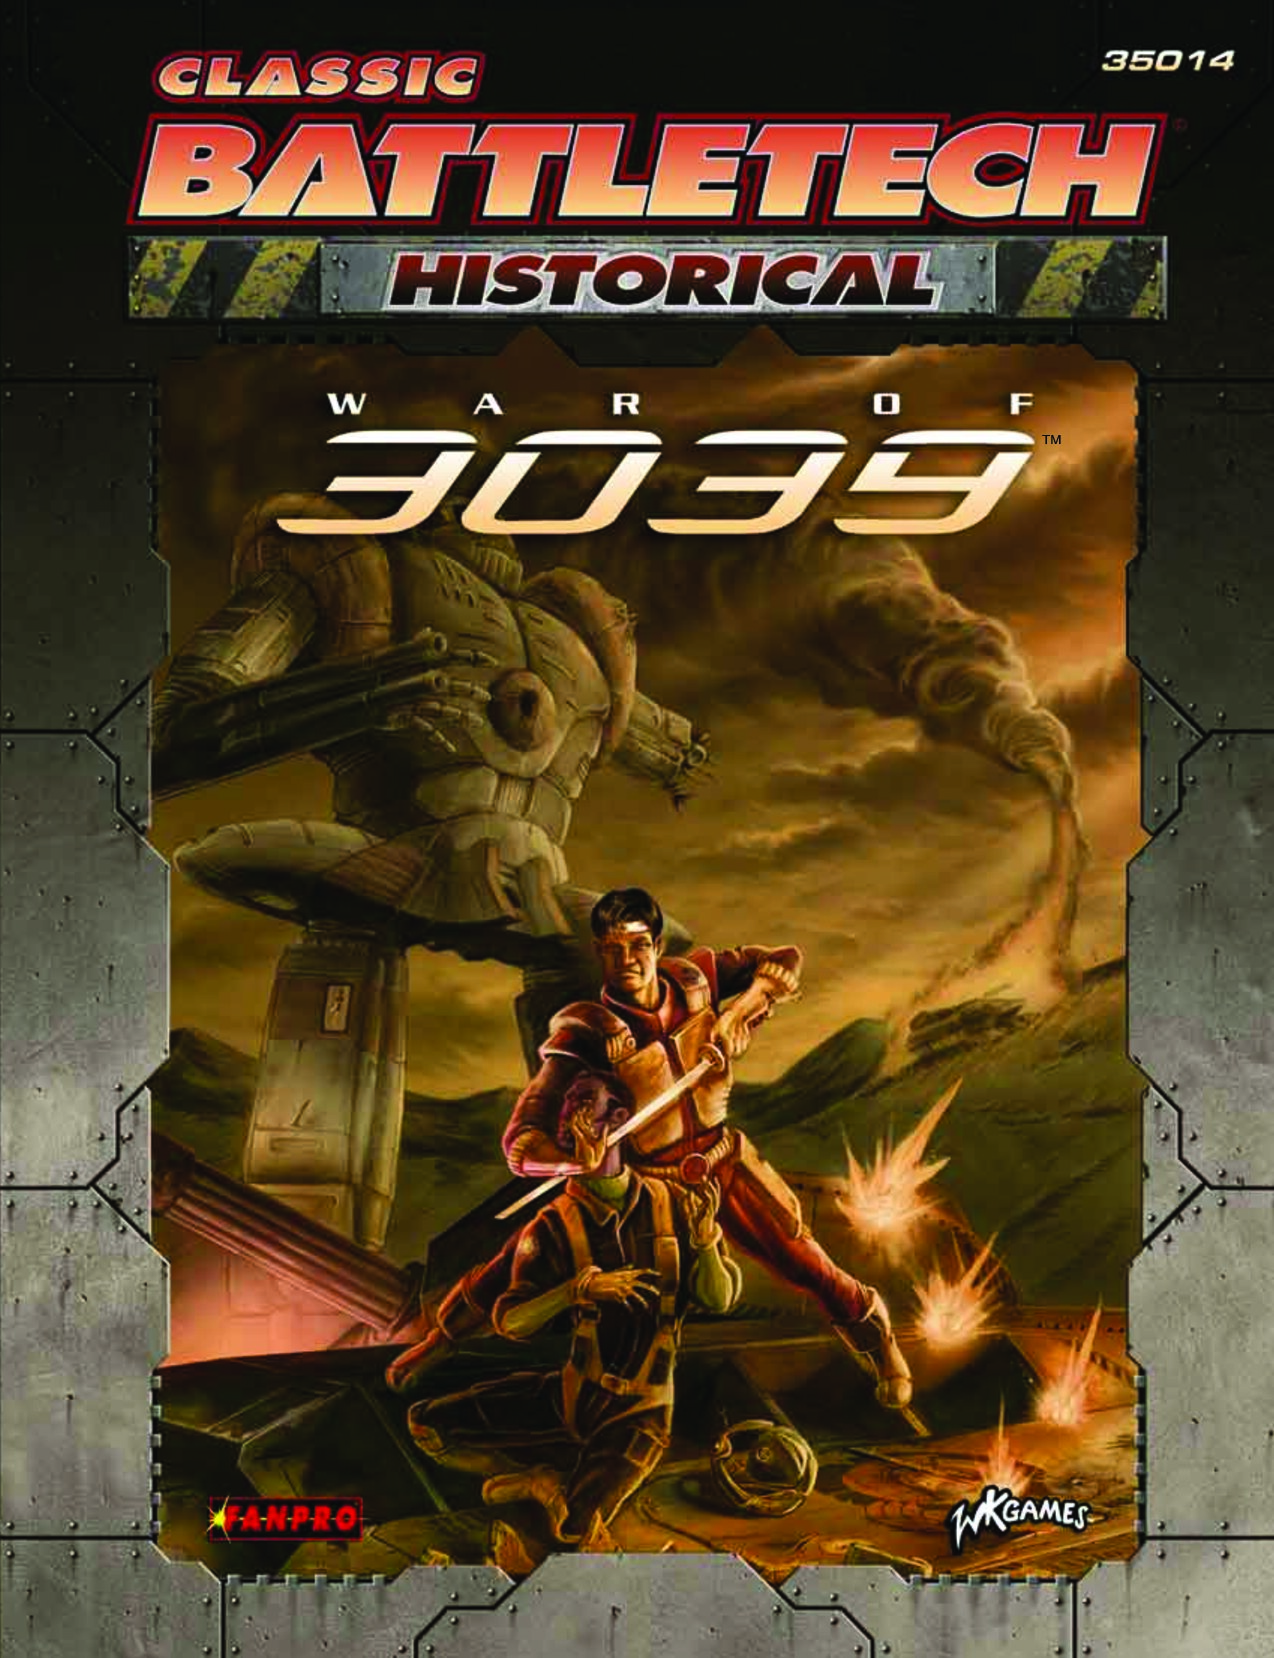 Classic Battletech War of 3039